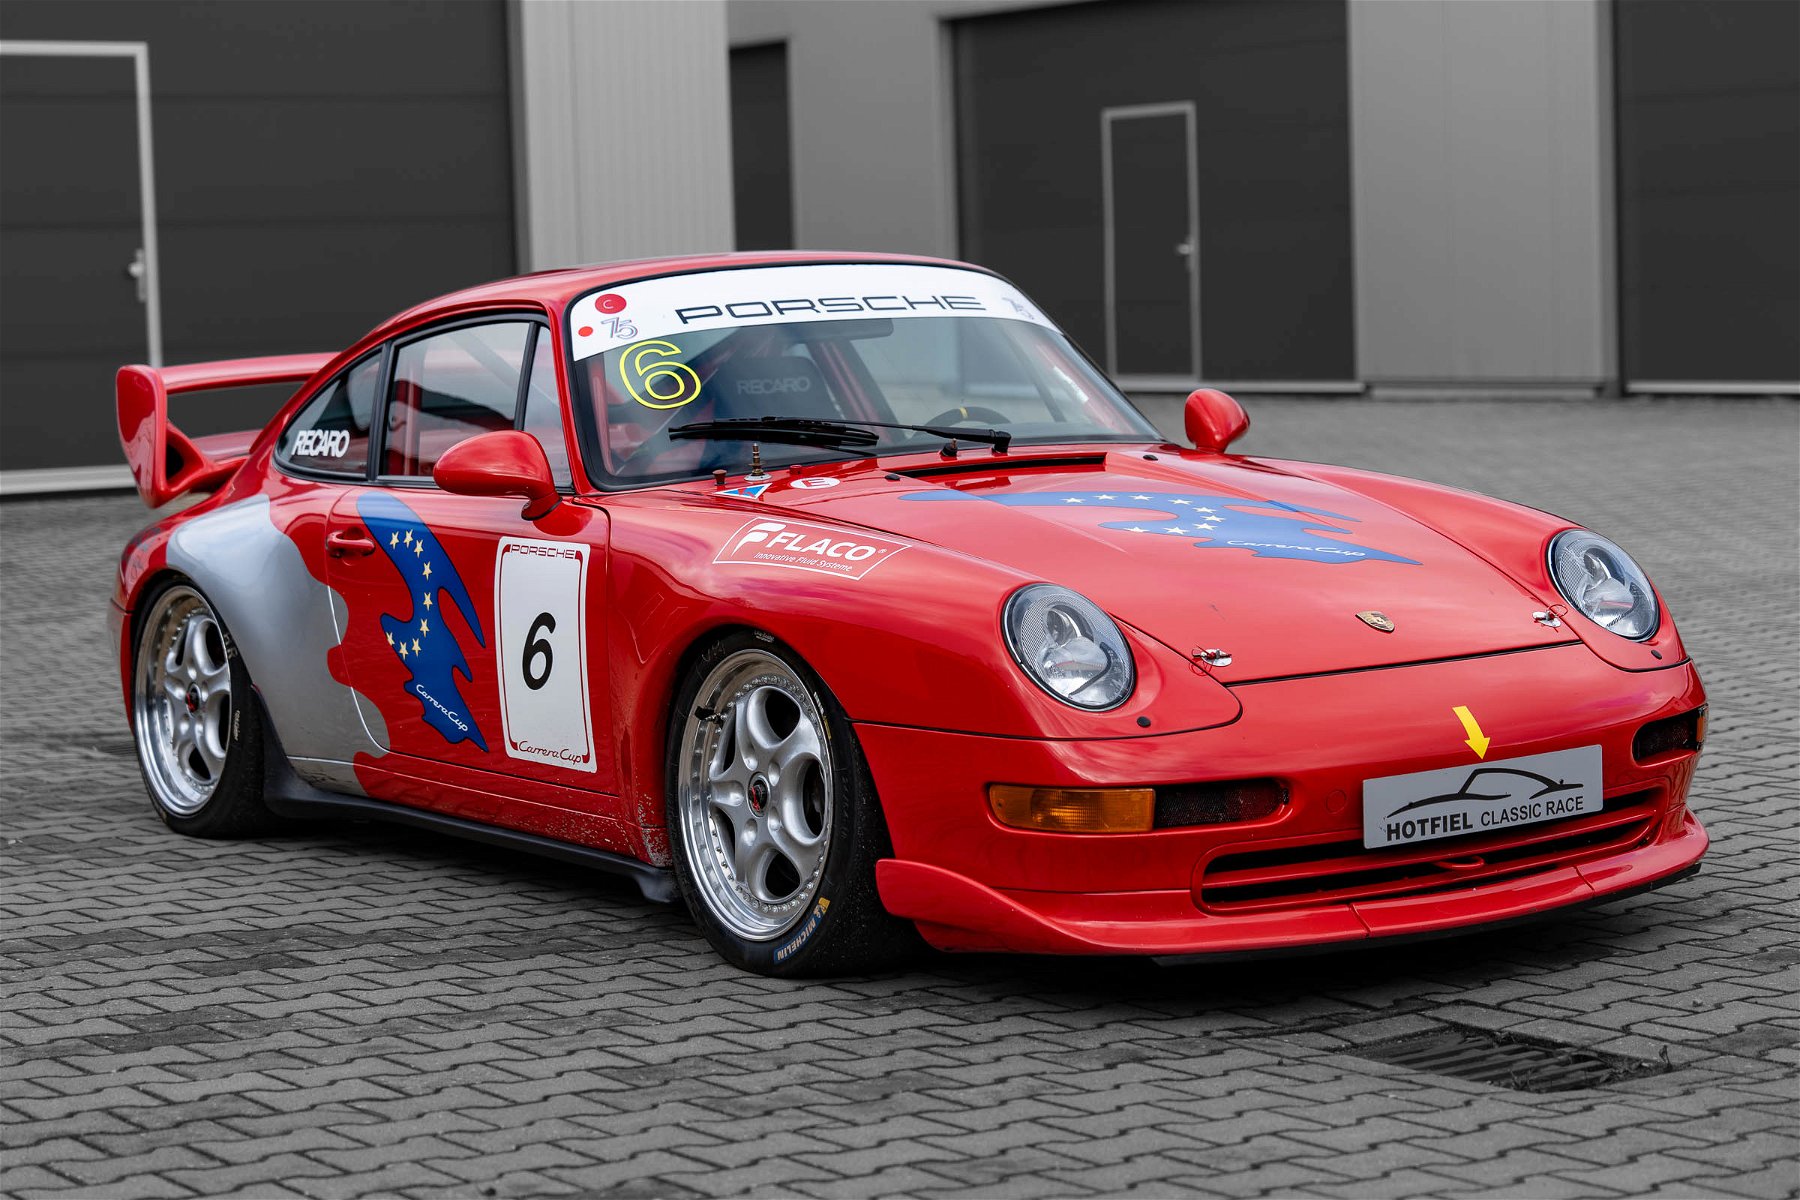 Porsche (911) 993 Cup for sale - Elferspot - Marketplace for Porsche